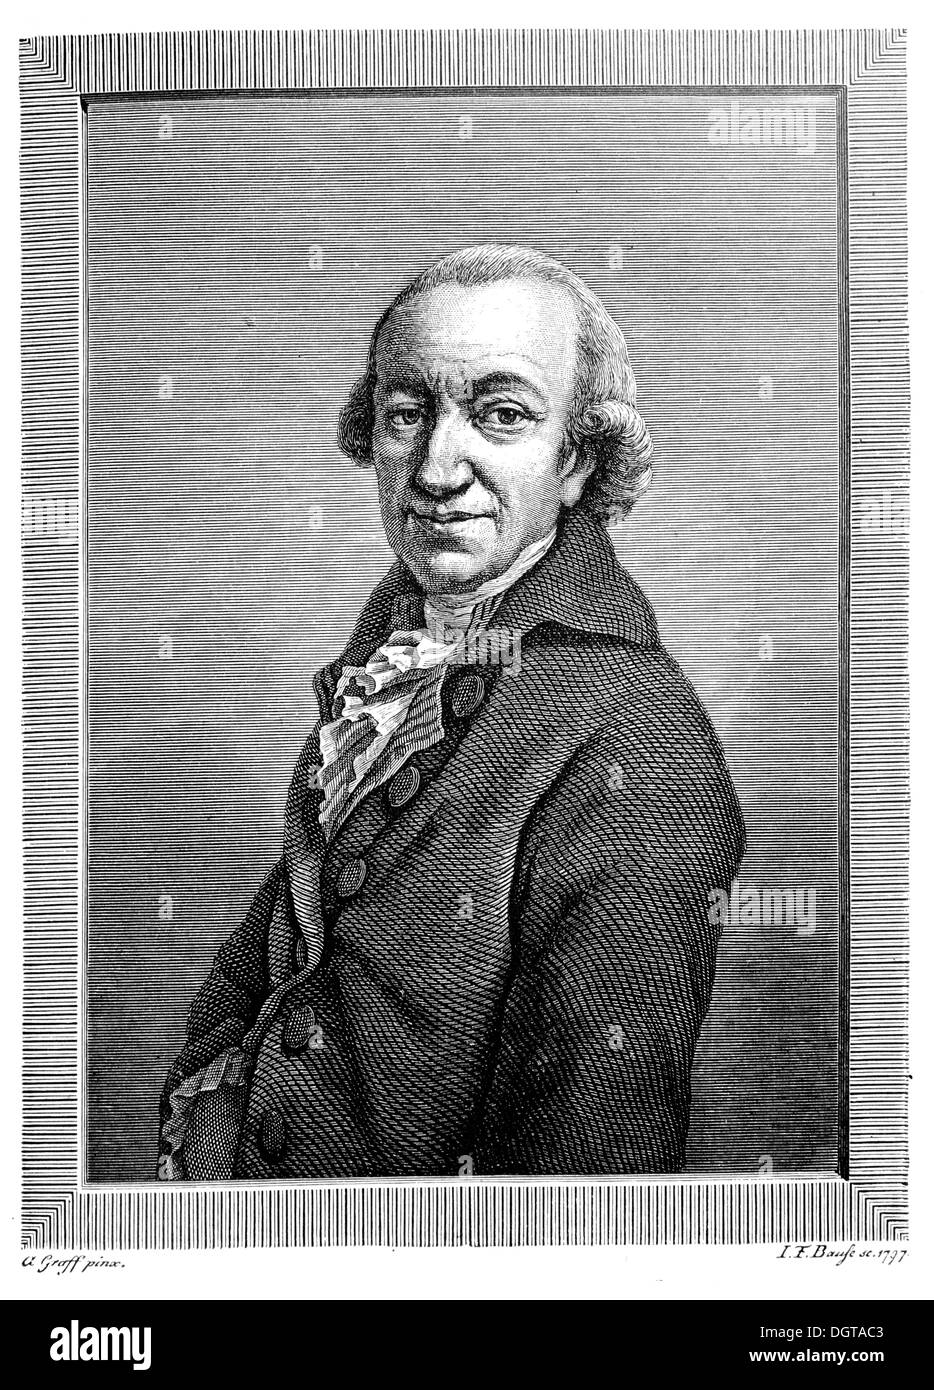 Christoph Martin Wieland, portrait à partir de 1797, dans l'inscription historique Deutsche Literaturgeschichte, une histoire de la littérature allemande Banque D'Images